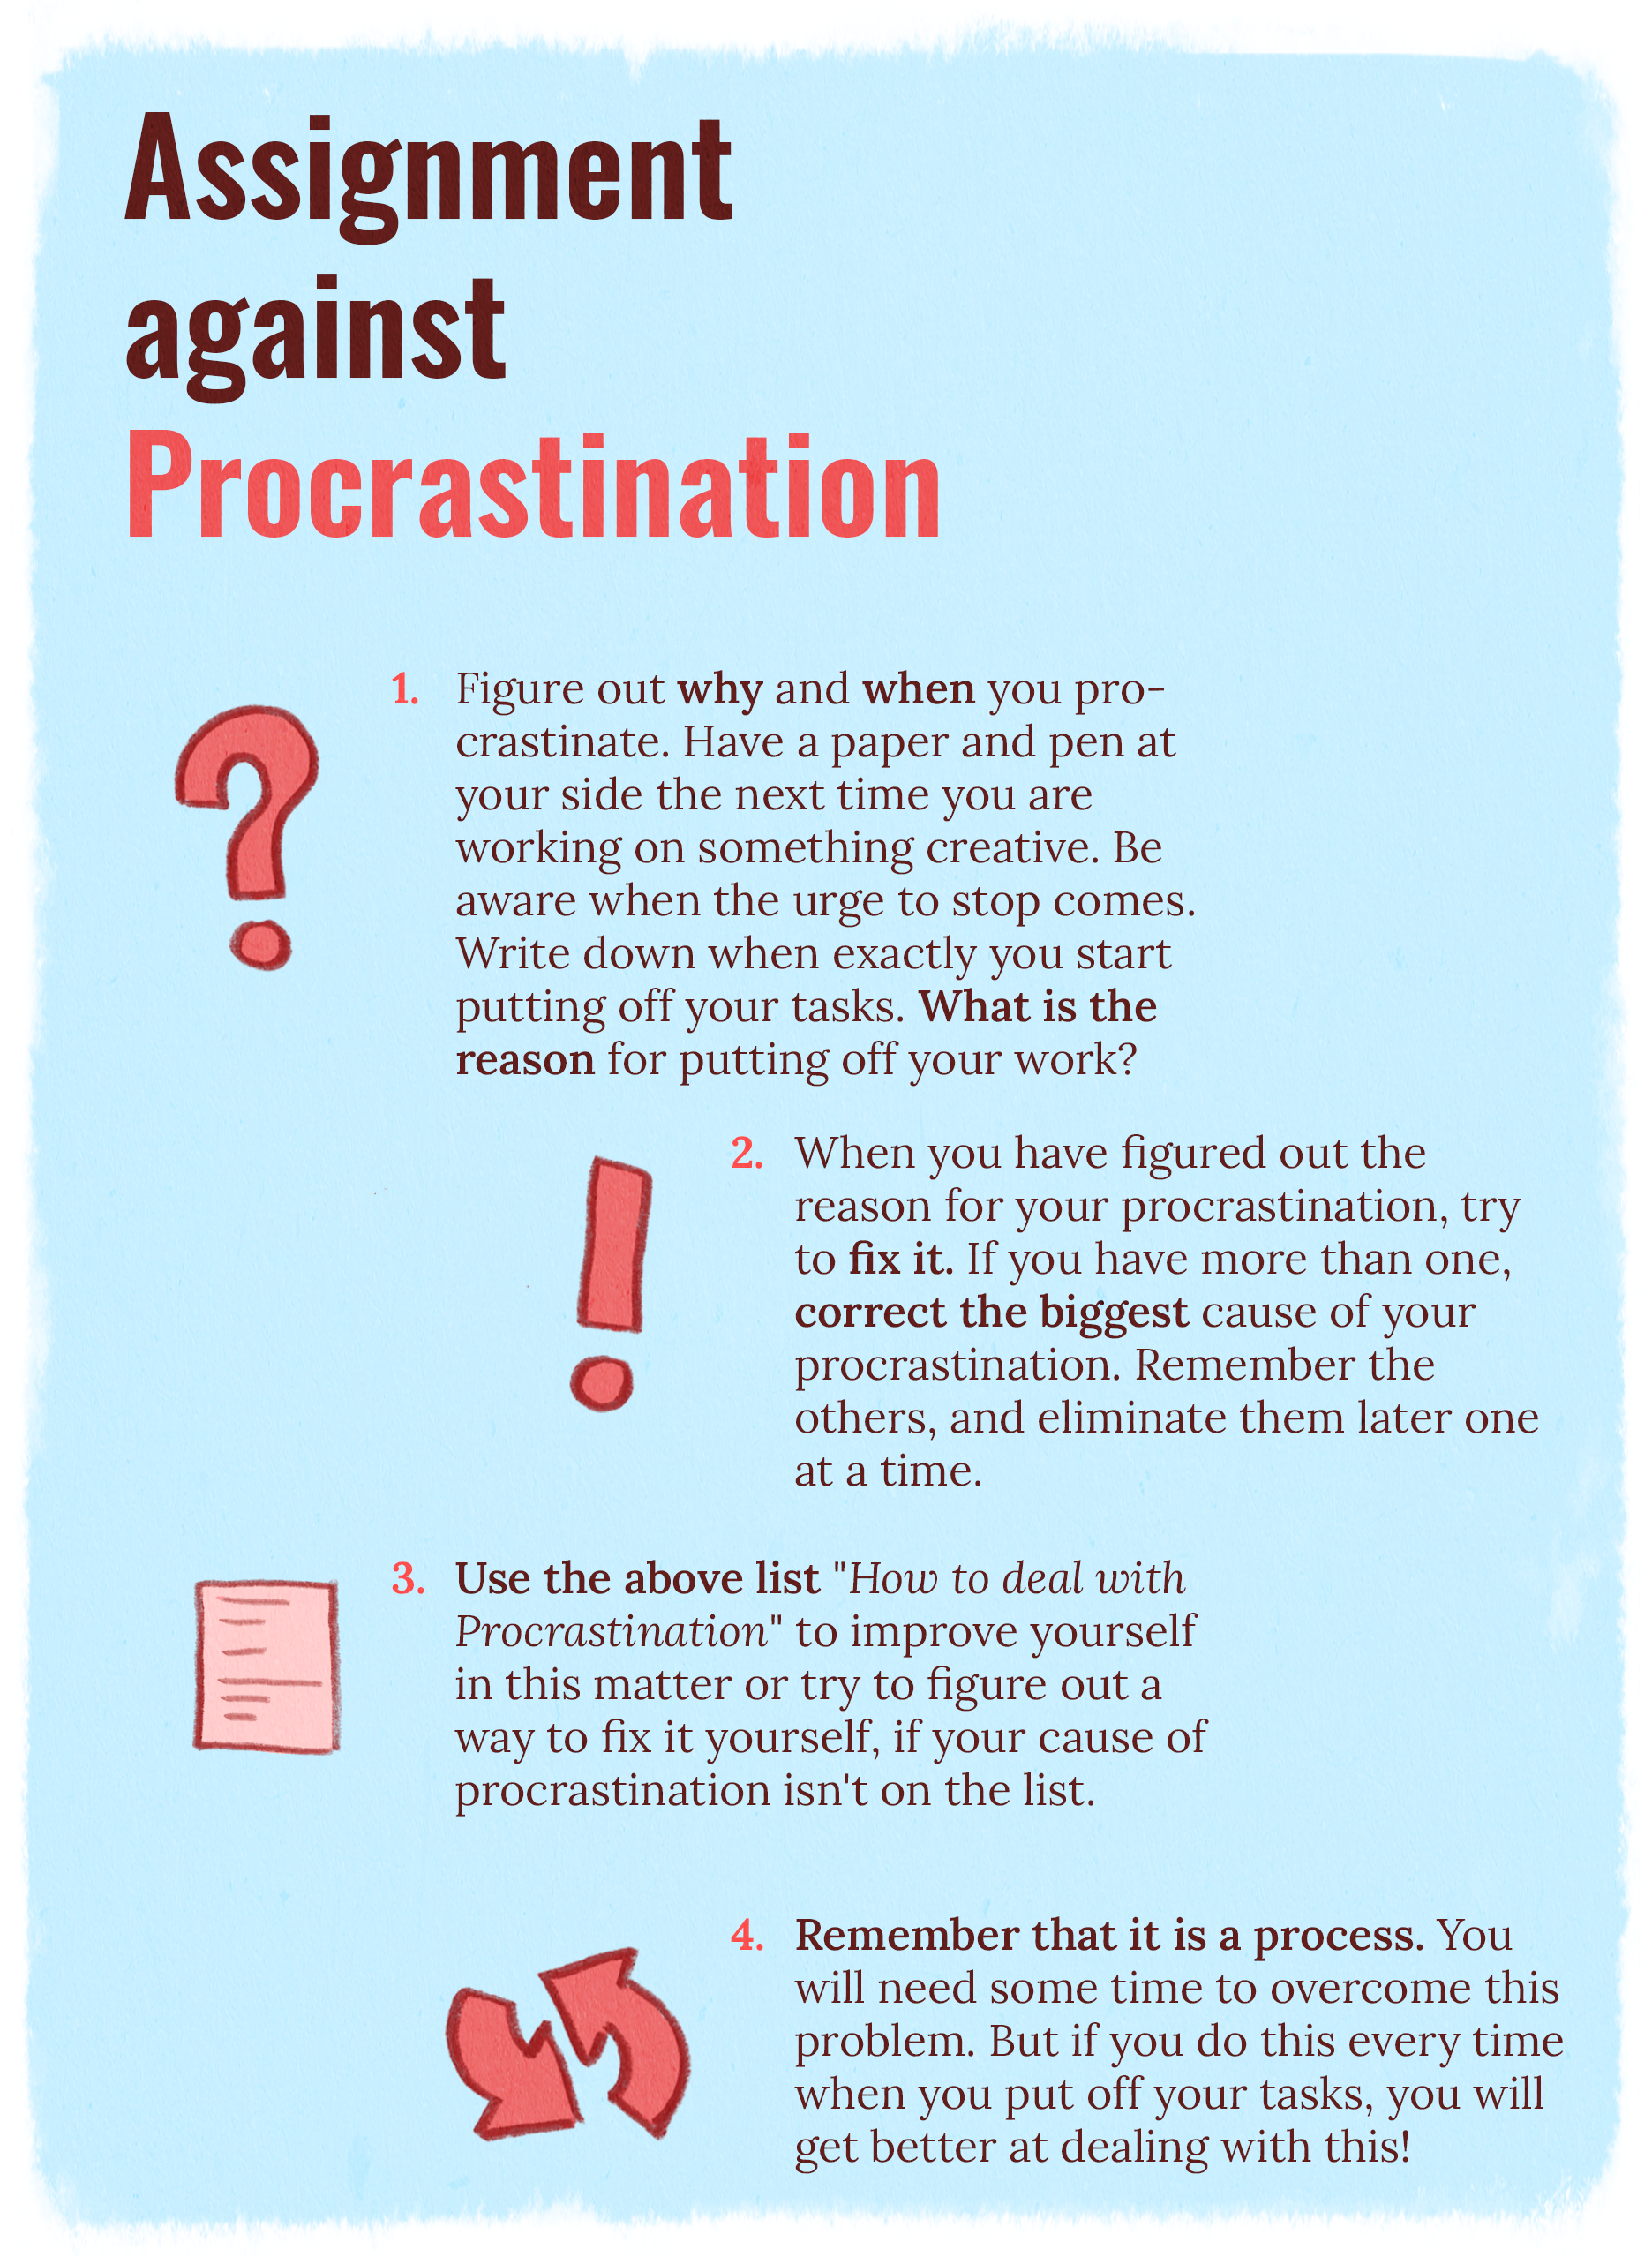 Assignment against Procrastination